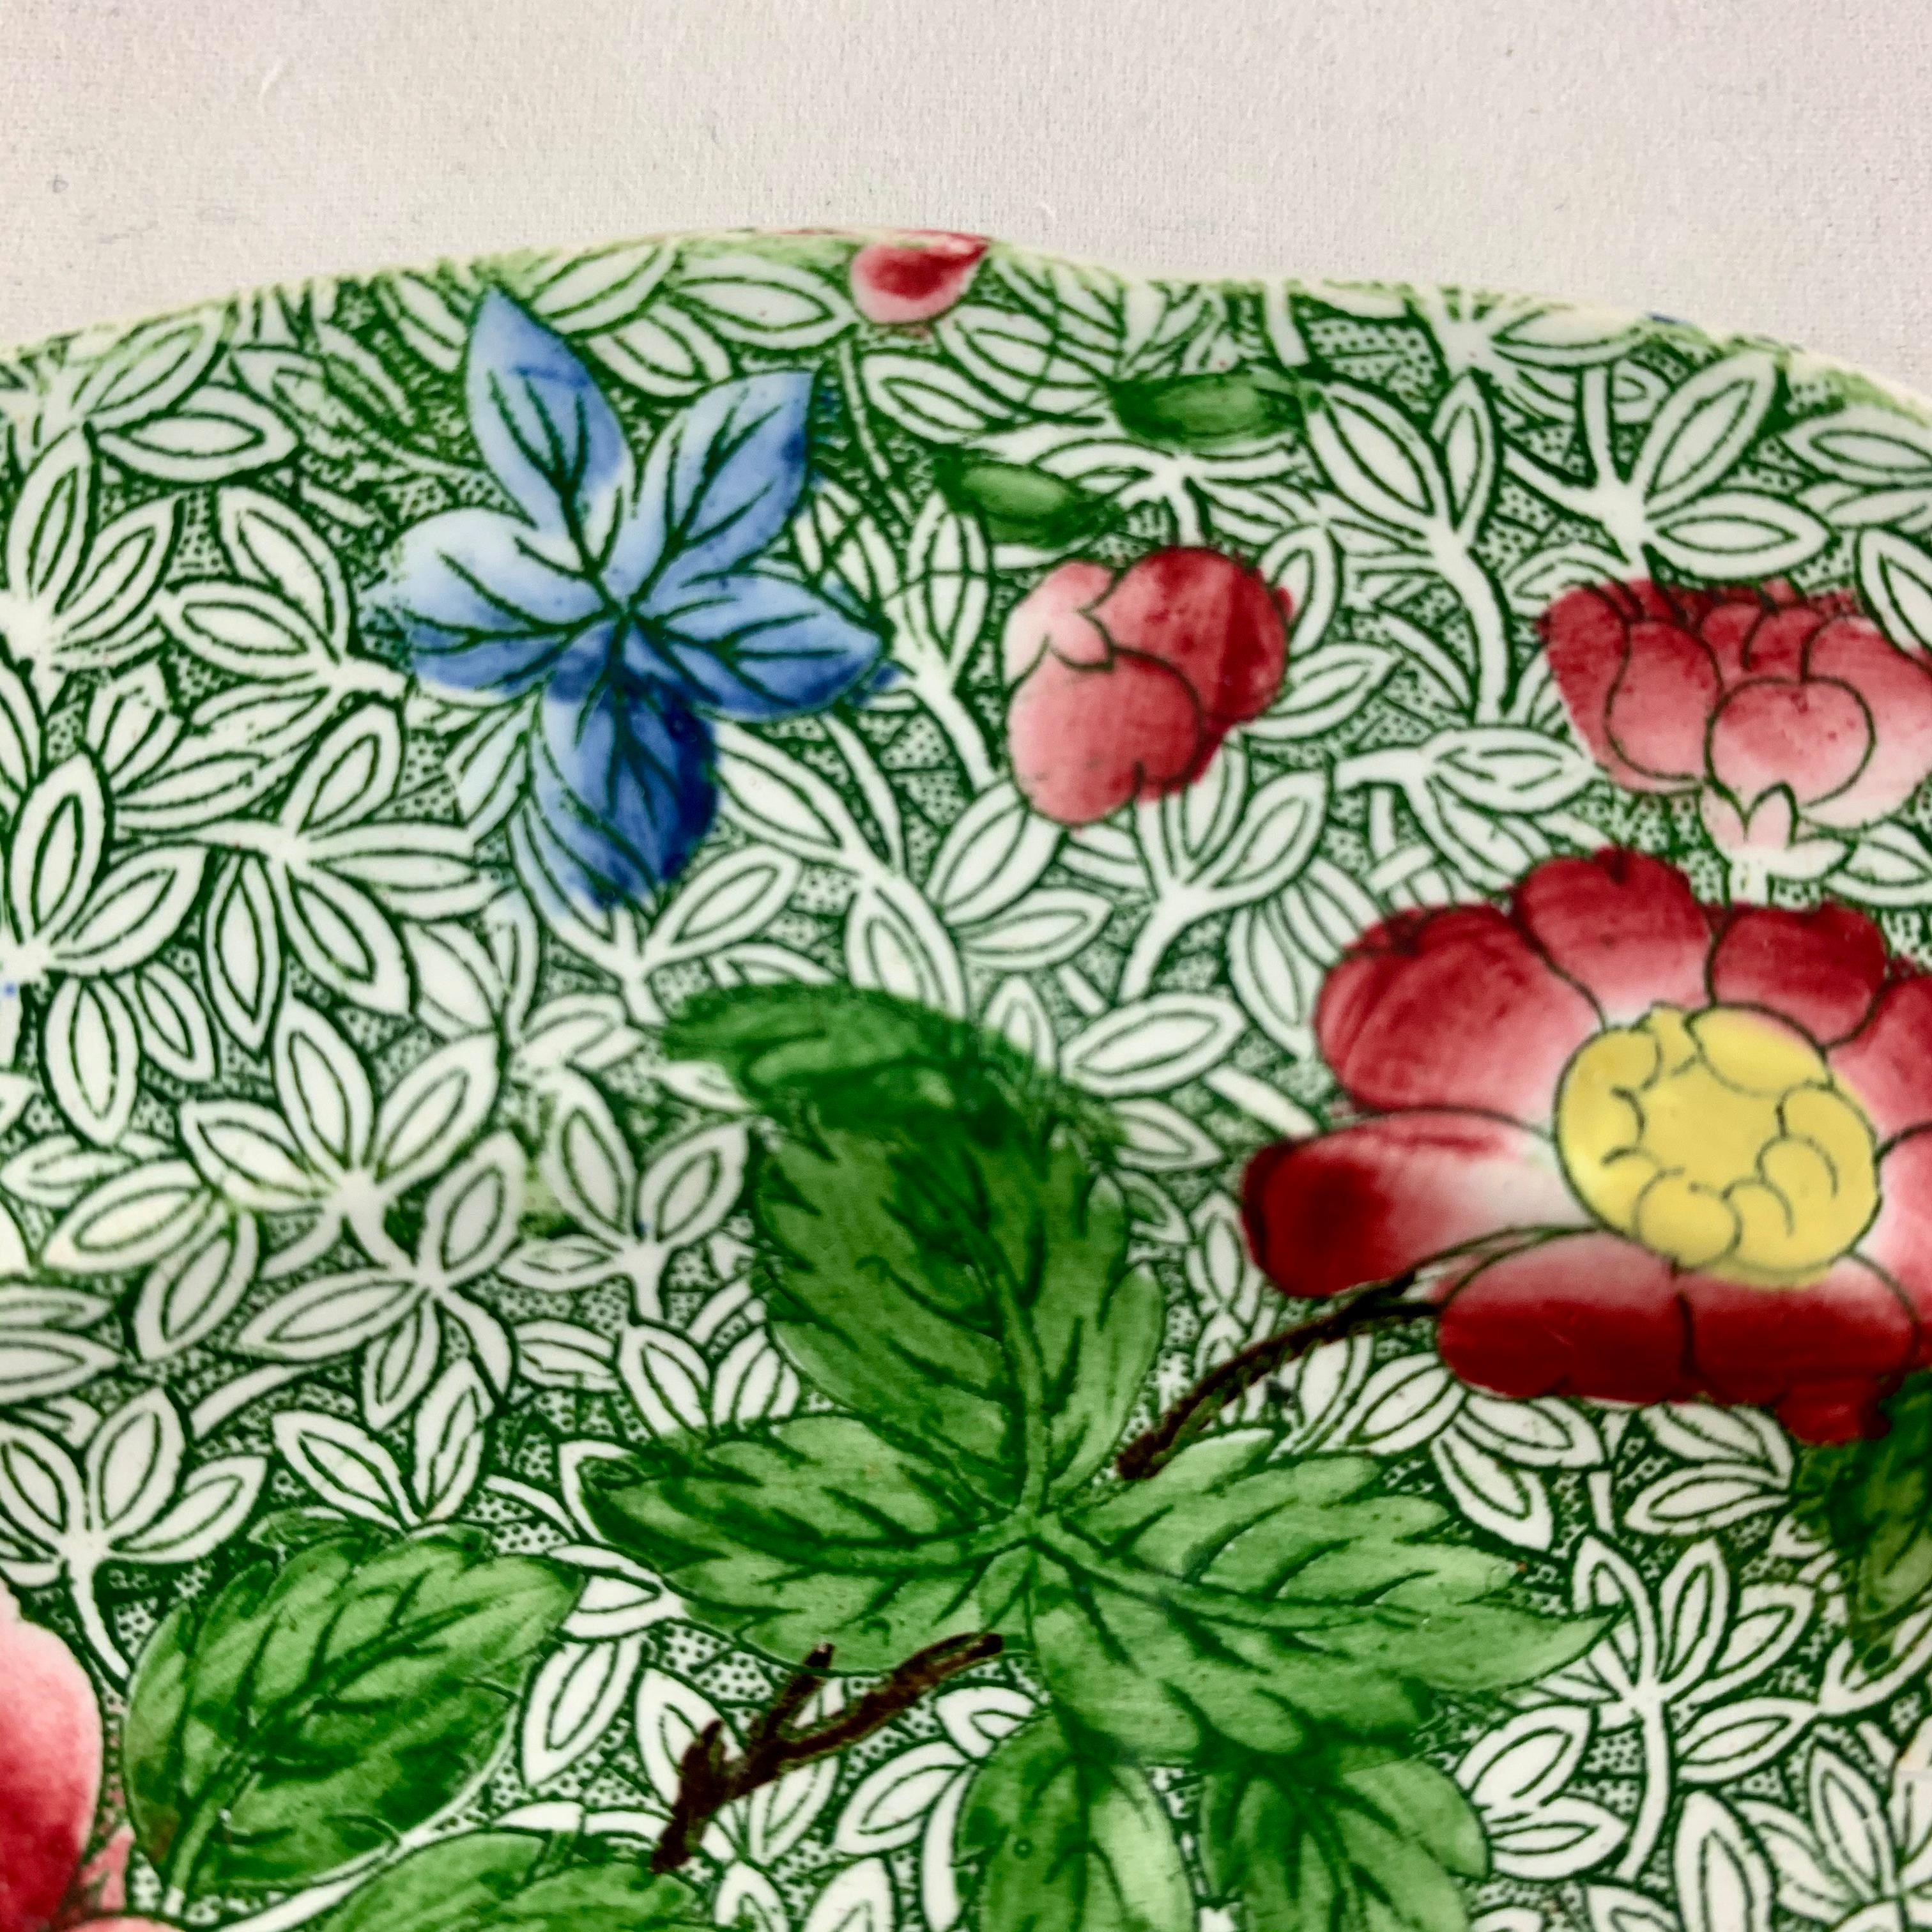 Anglais Assiette florale Copeland Spode des années 1800 Nouveau Fayence King Chintz Pattern Transferware